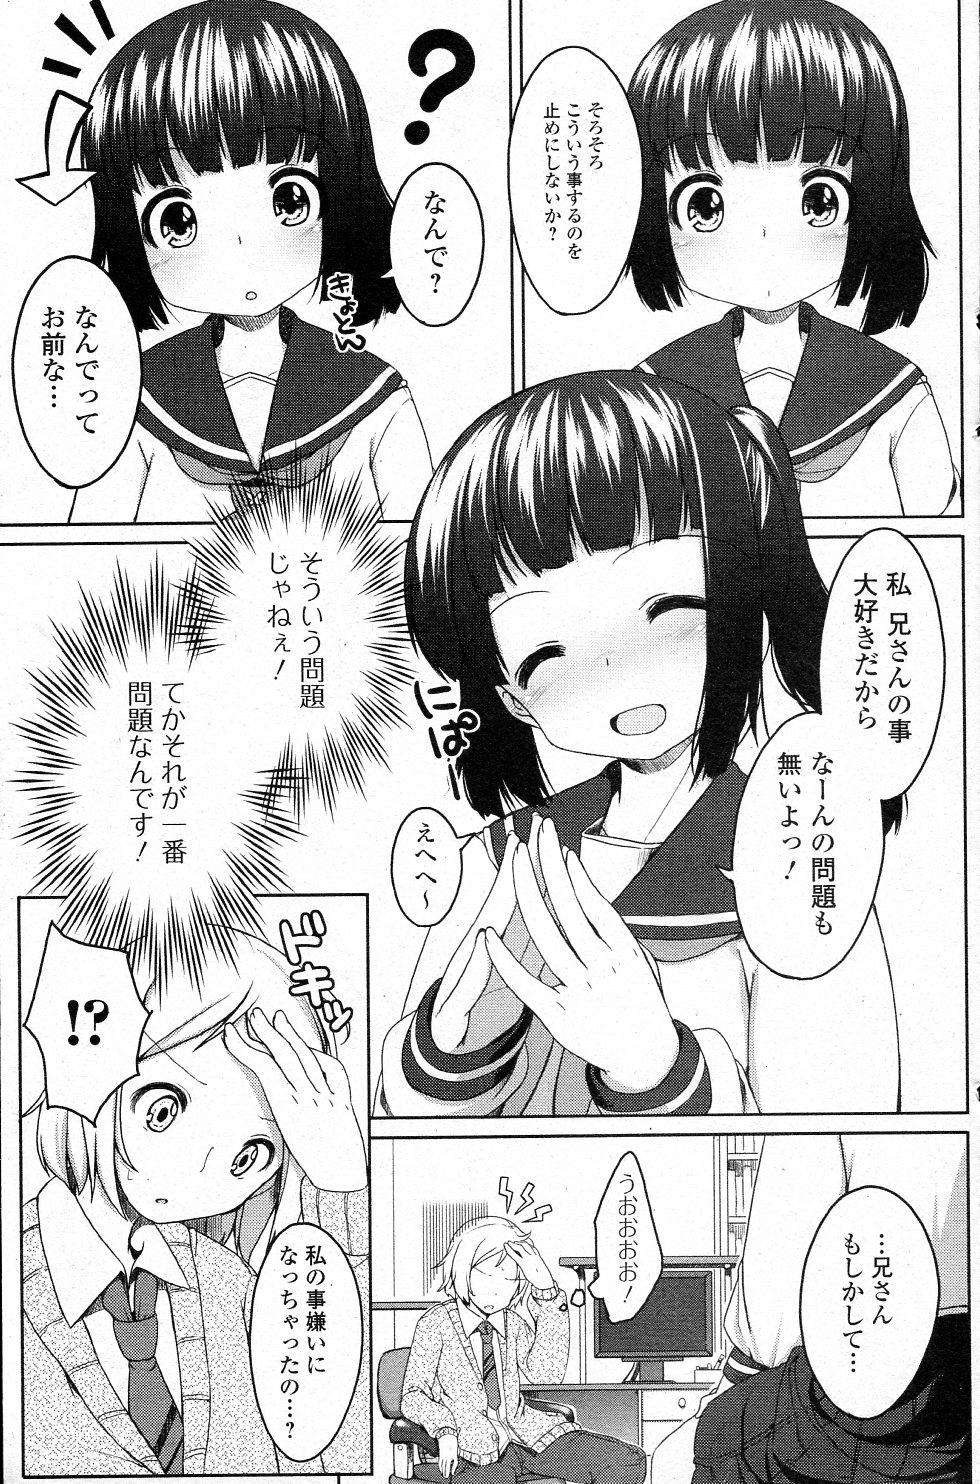 18 Year Old Niisan Daisuki! Parody - Page 5